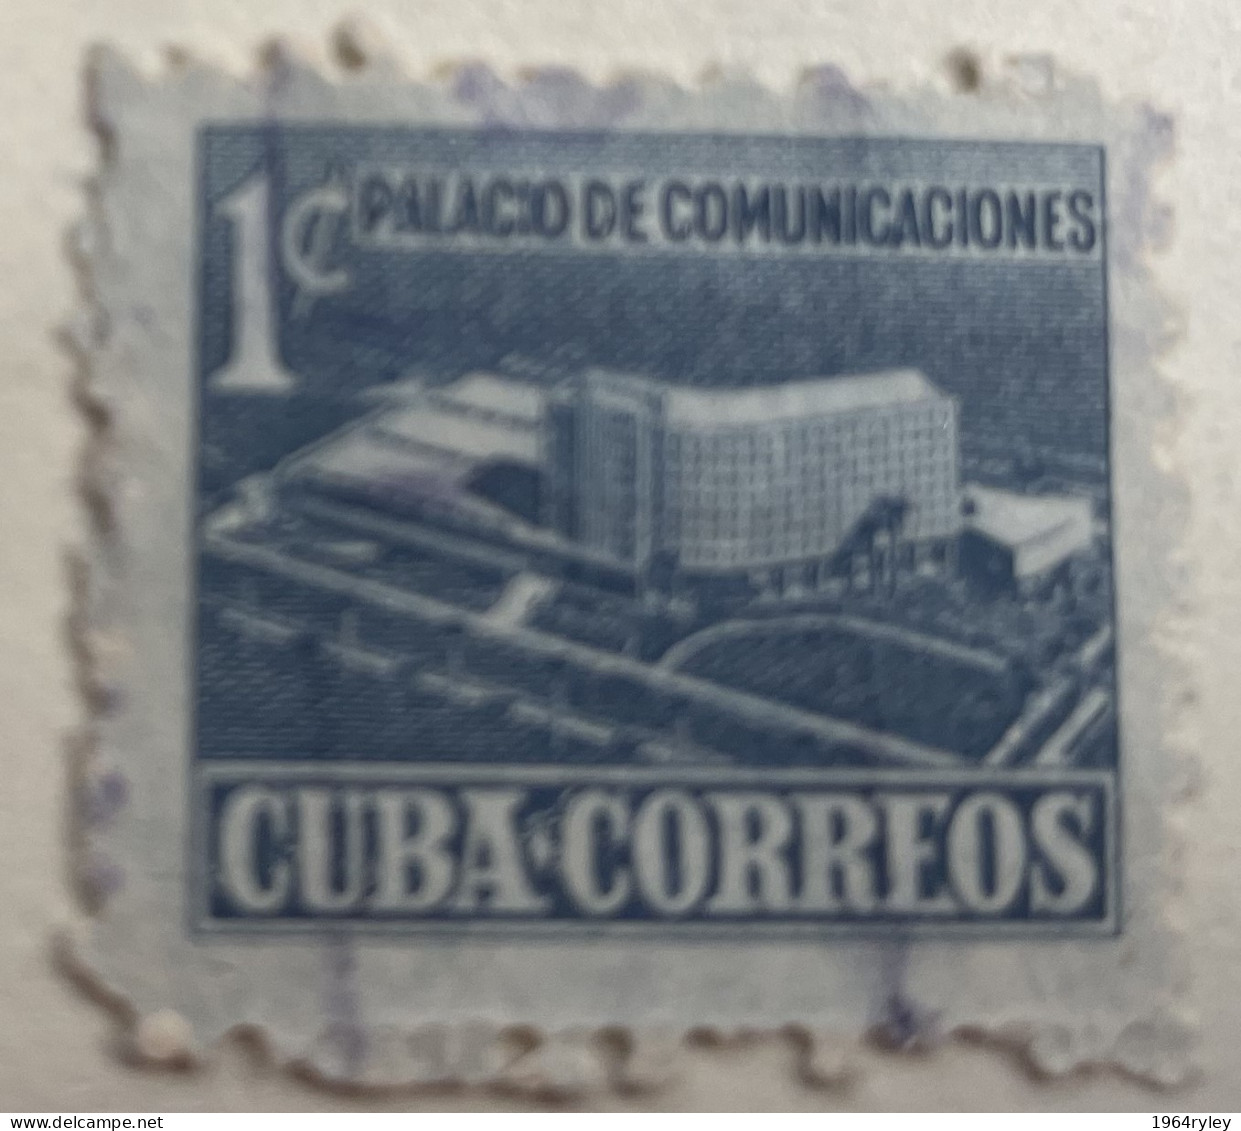 CUBA - (0) - 1952  -   # RA 16 - Oblitérés